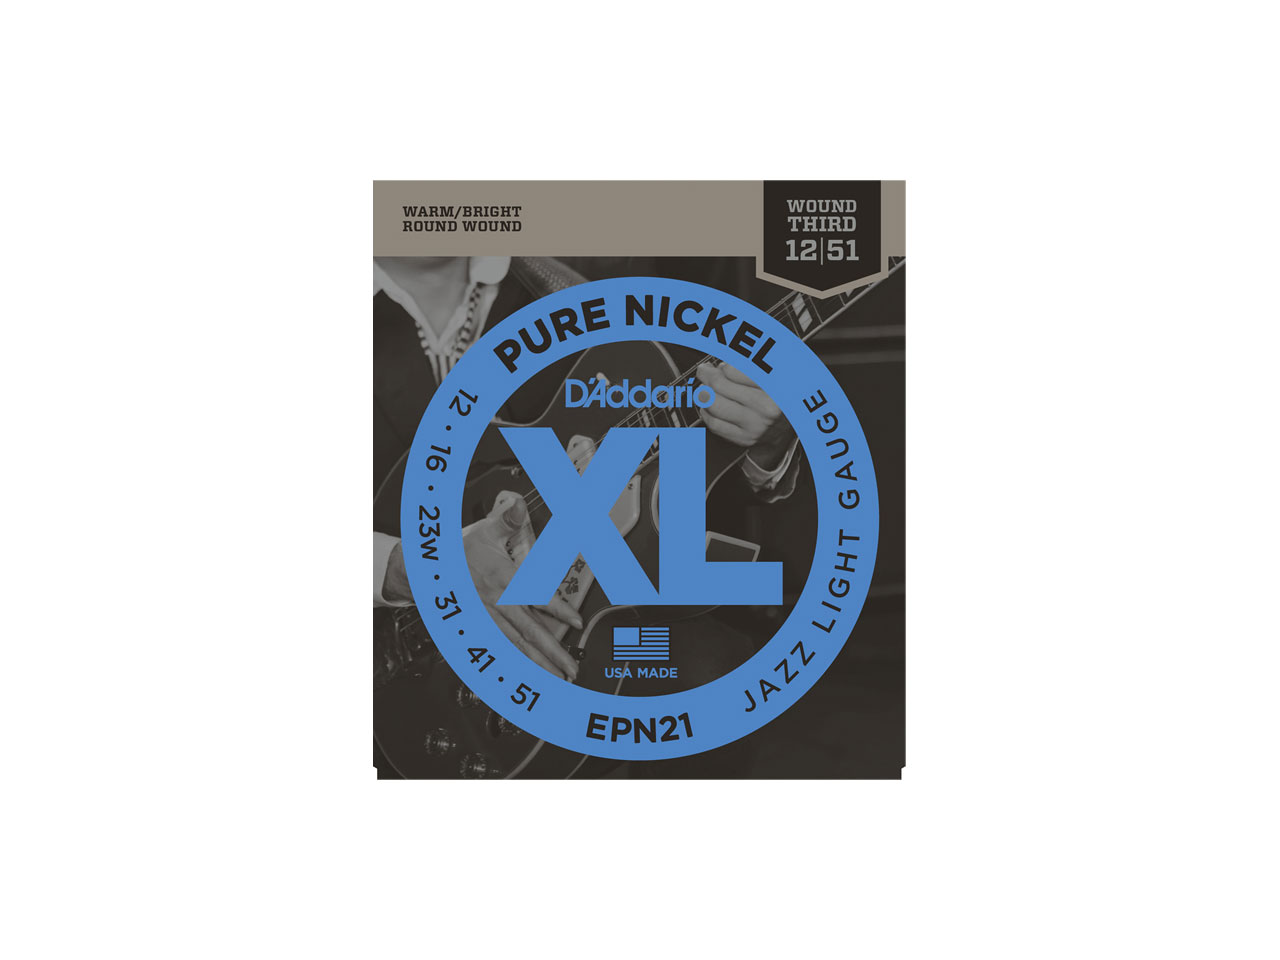 D'Addario(ダダリオ) XL Pure Nickel Round Wound Jazz Light / EPN21 (エレキギター弦)